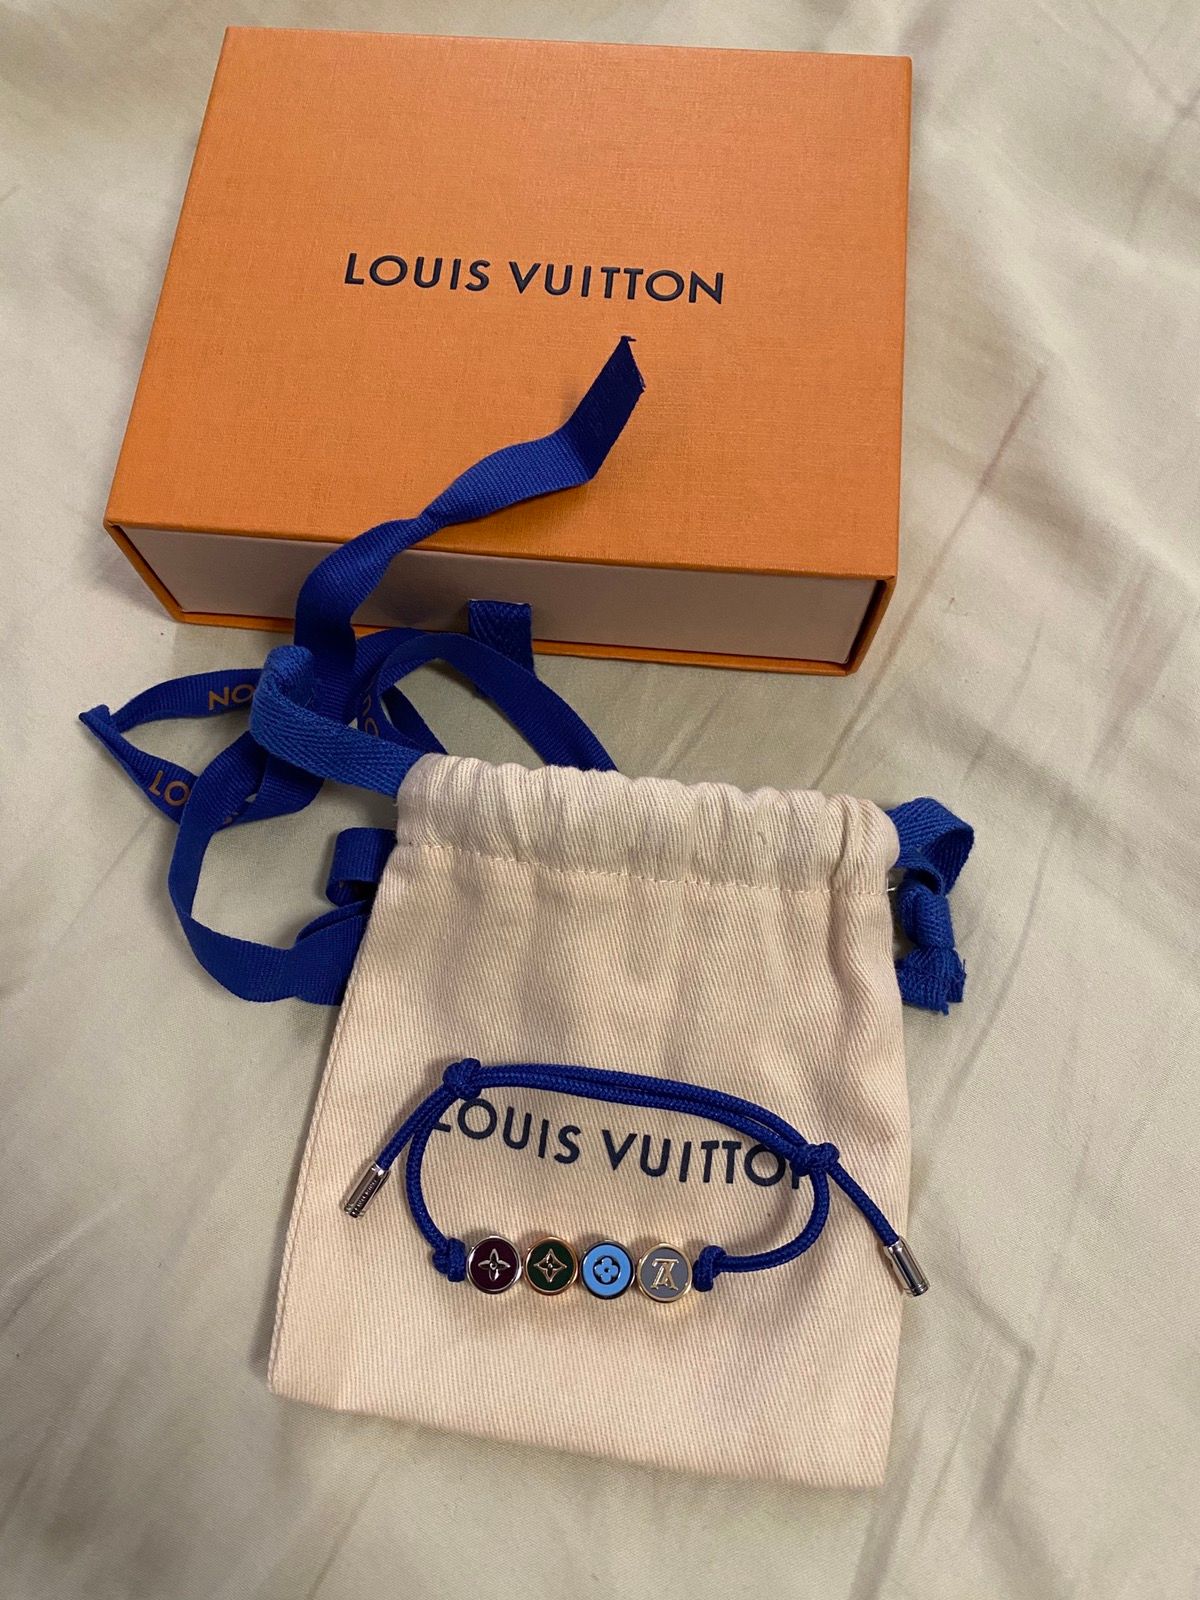 LOUIS VUITTON LV COLORS BEADS BRACELETS BLUE - DD6186 